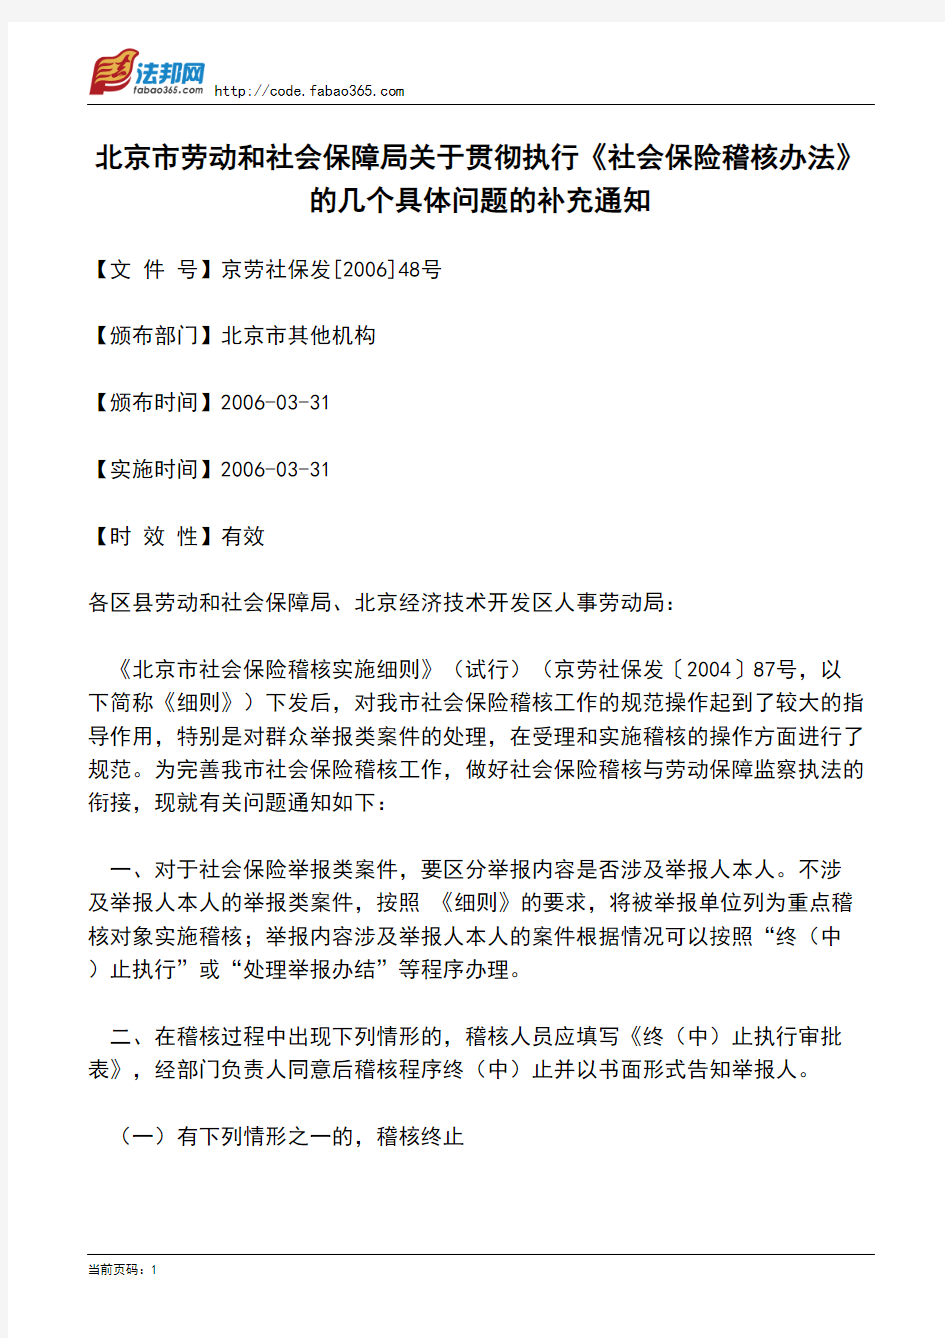 北京市劳动和社会保障局关于贯彻执行《社会保险稽核办法》的几个具体问题的补充通知